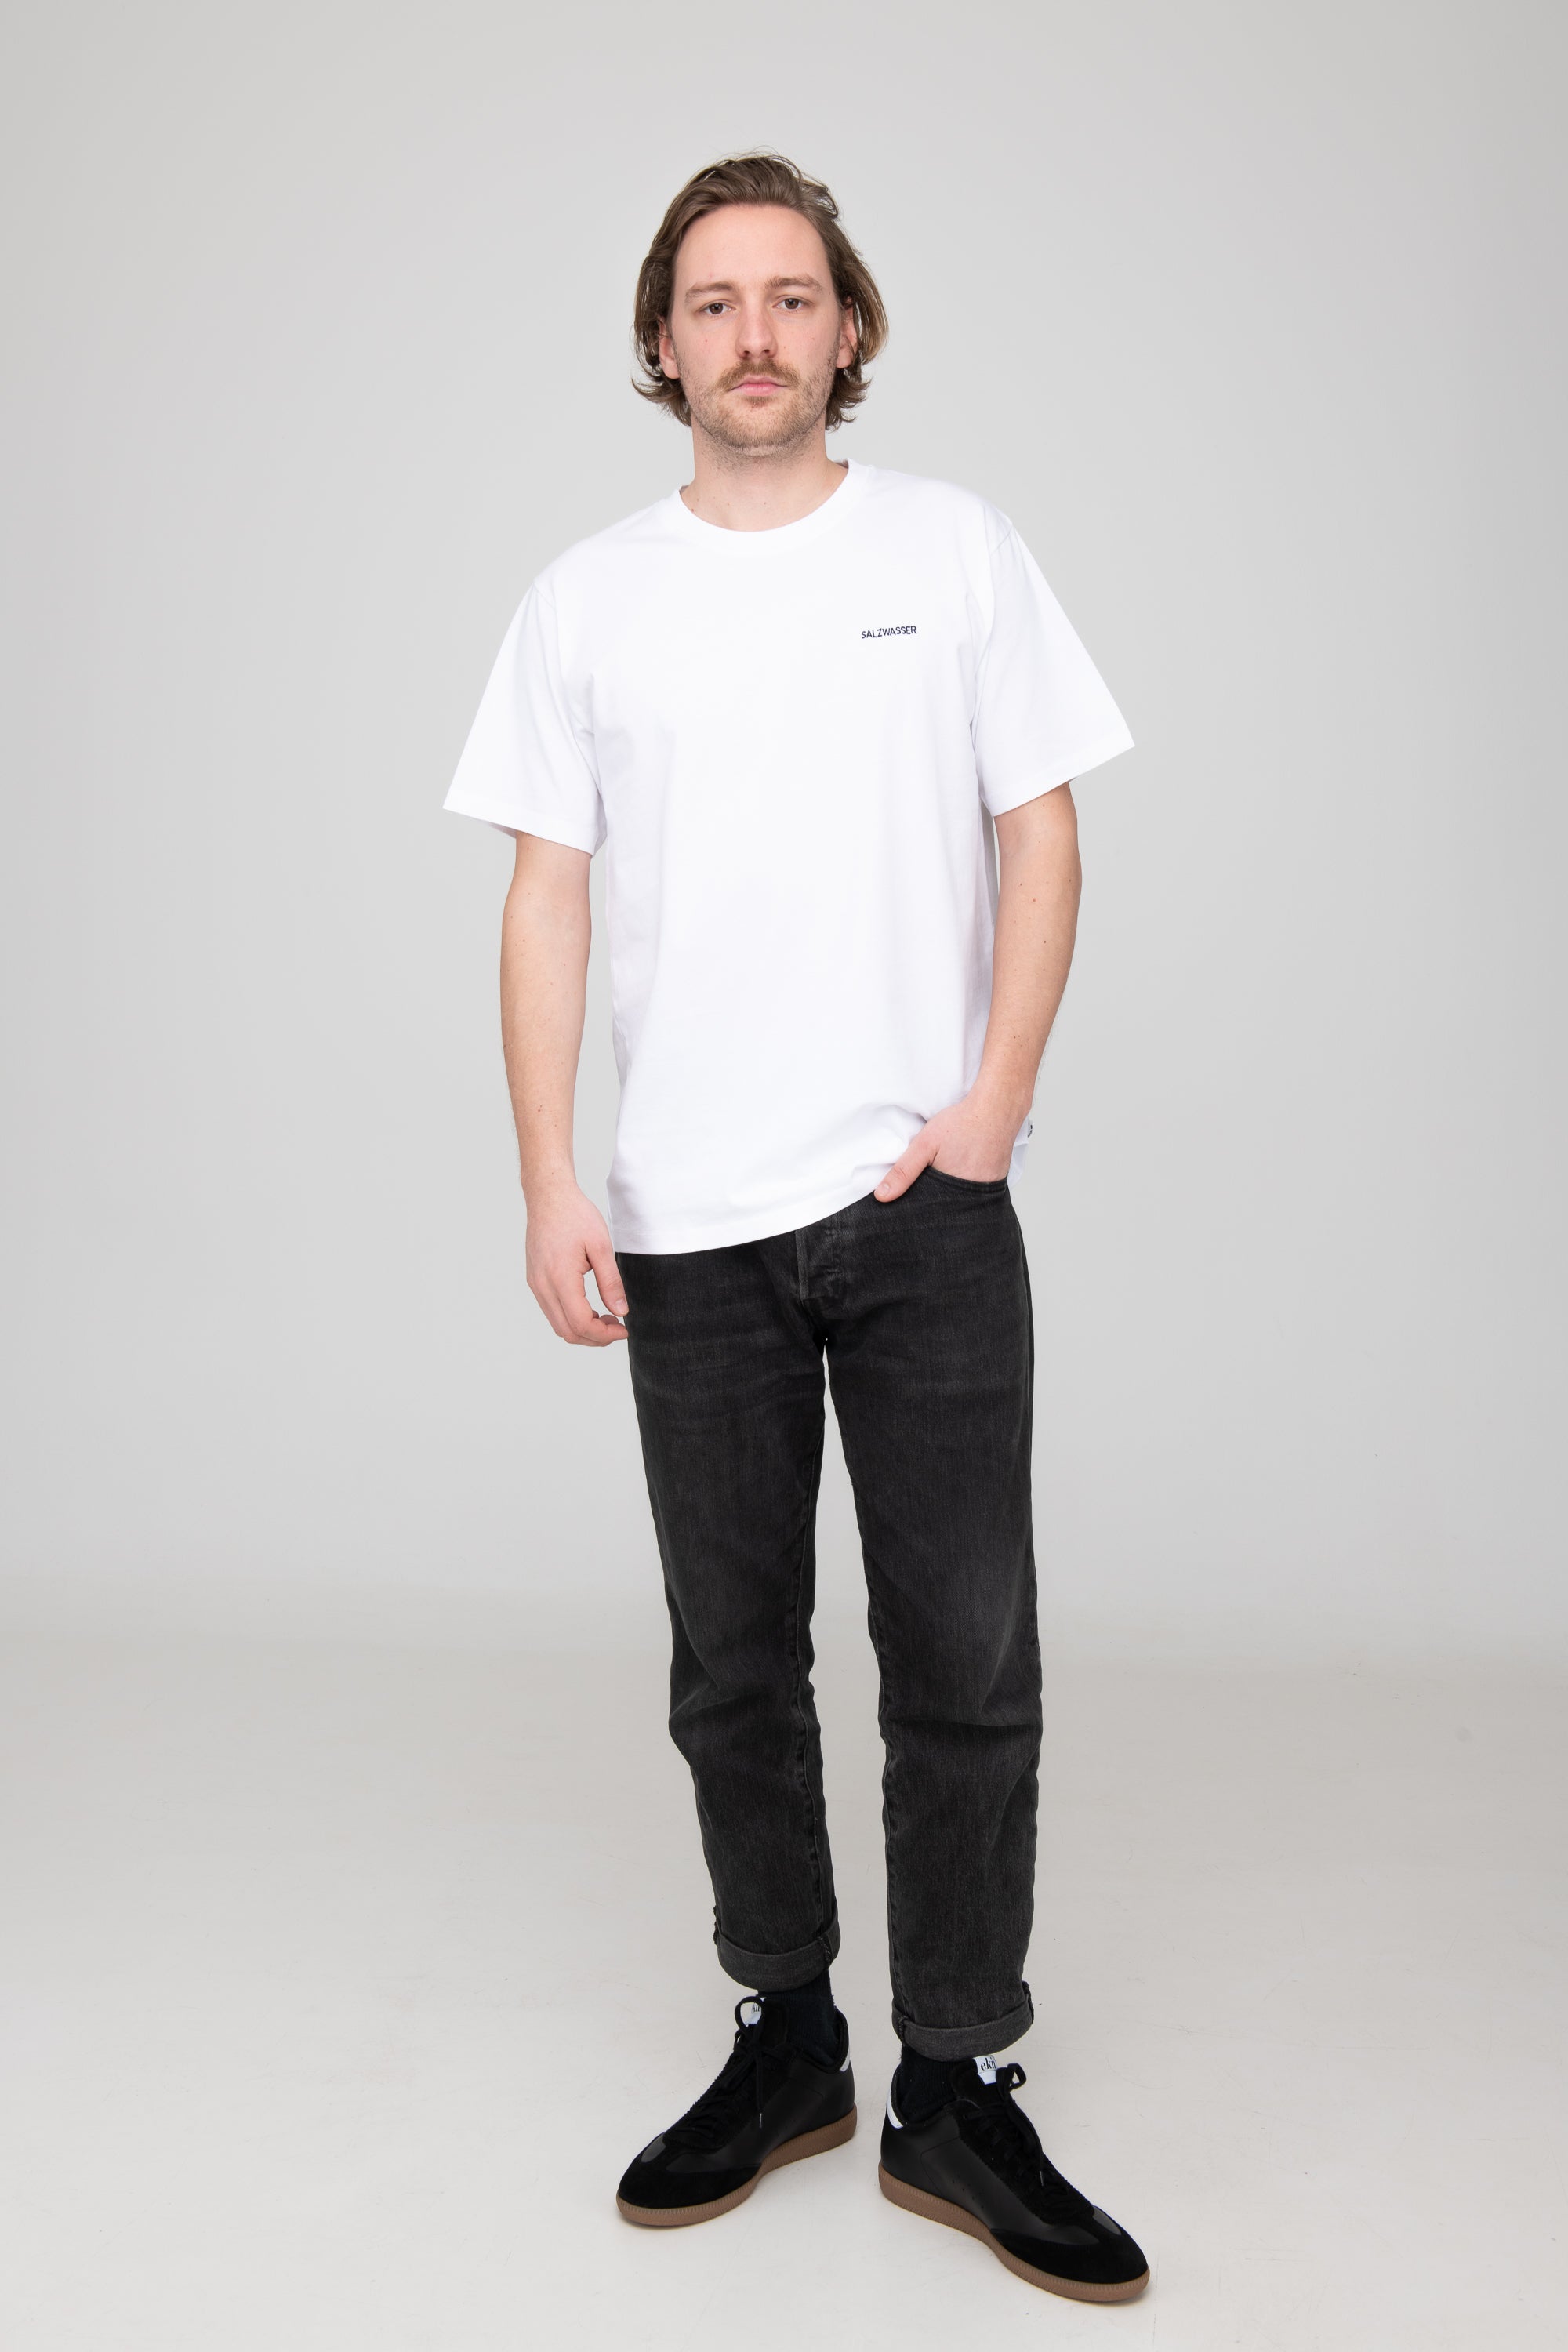 Mann trägt GOTS-zertifiziertes weißes T-Shirt von SALZWASSER